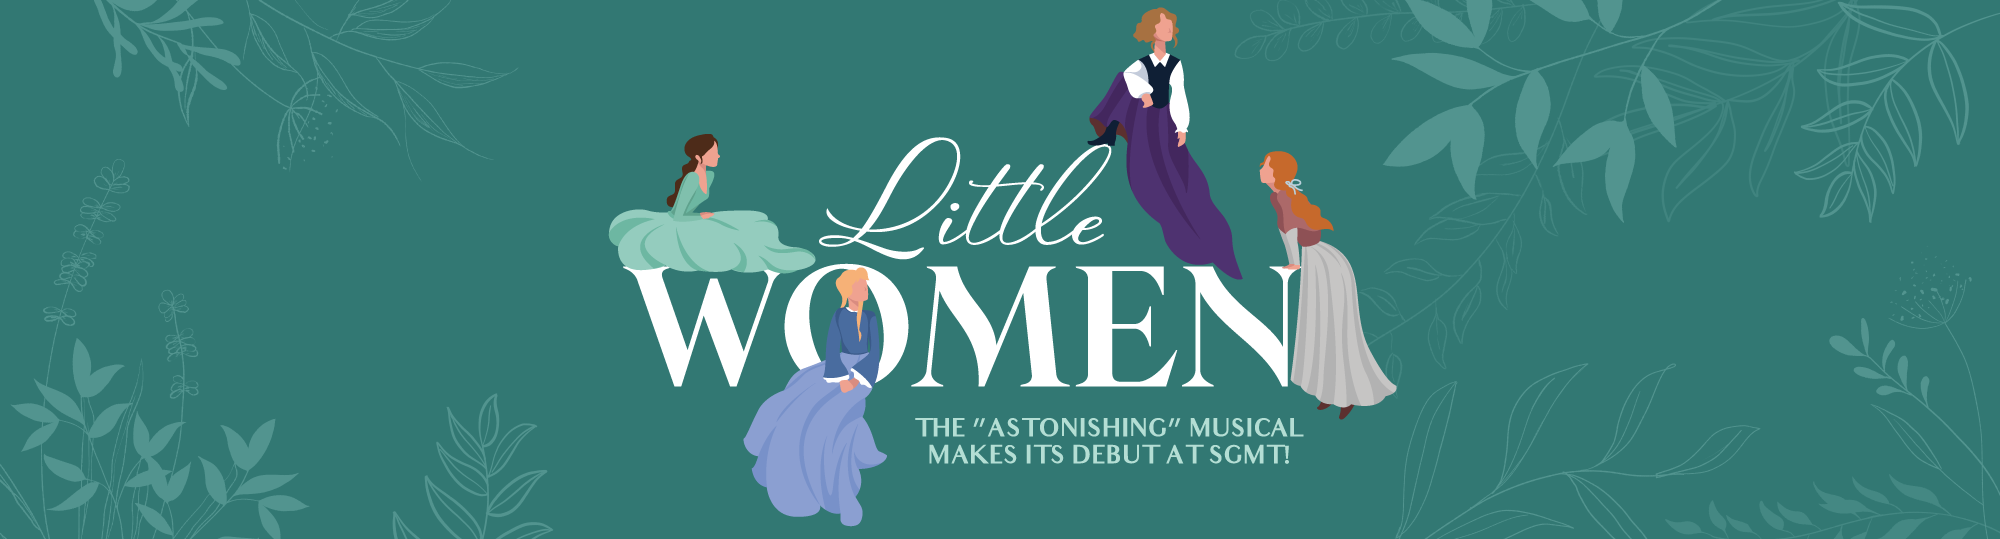 Little Women banner